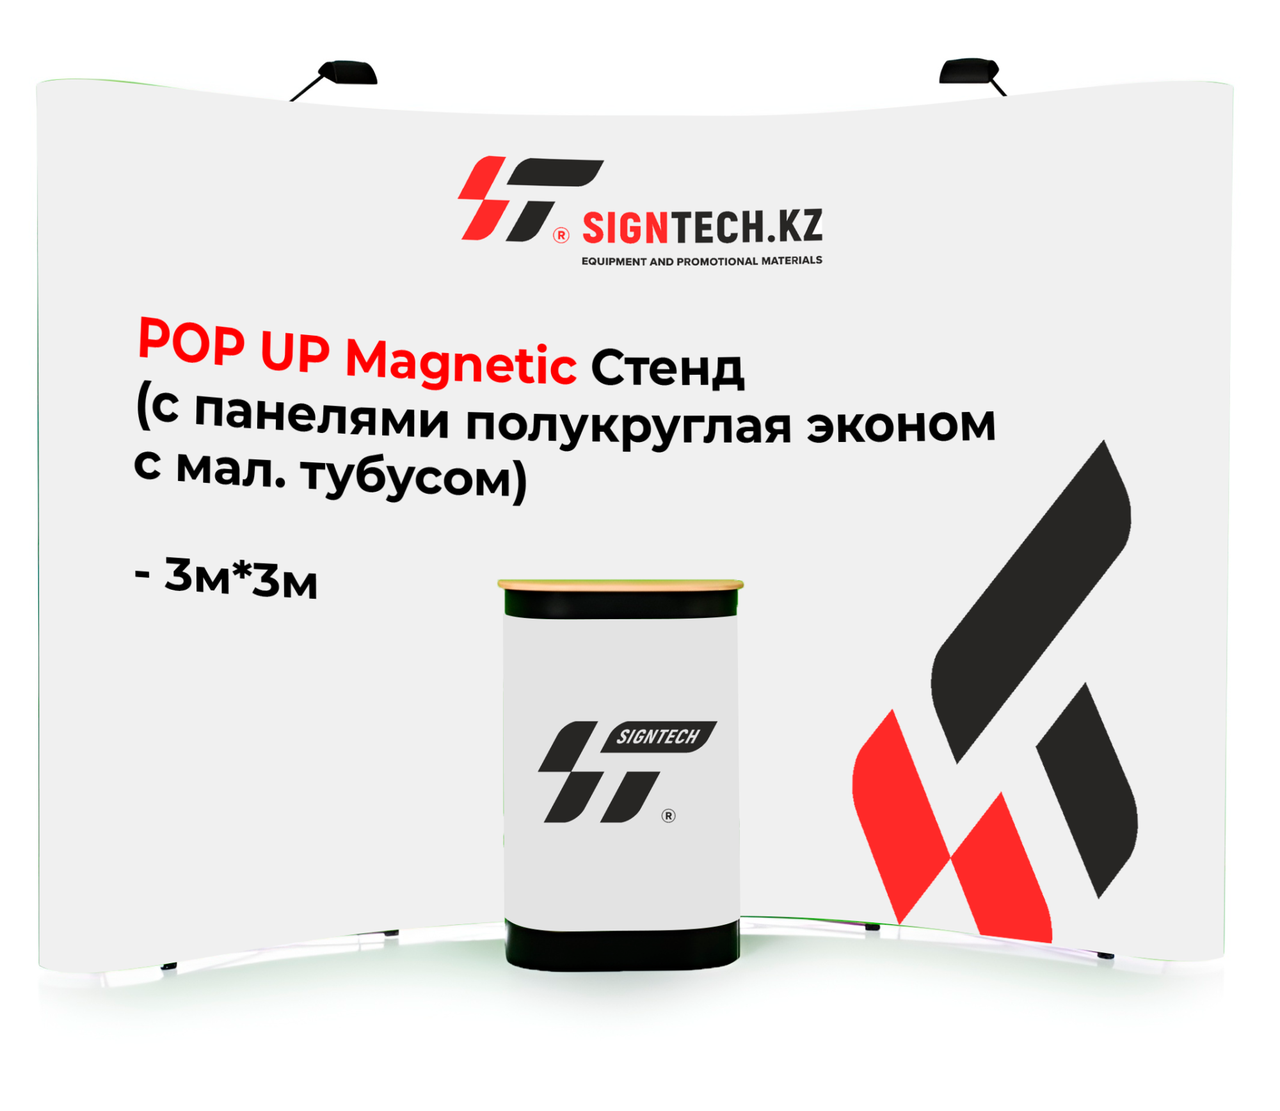 POP UP Magnetic Стенд (с панелями полукруглая эконом с мал. тубусом) 3м*3м